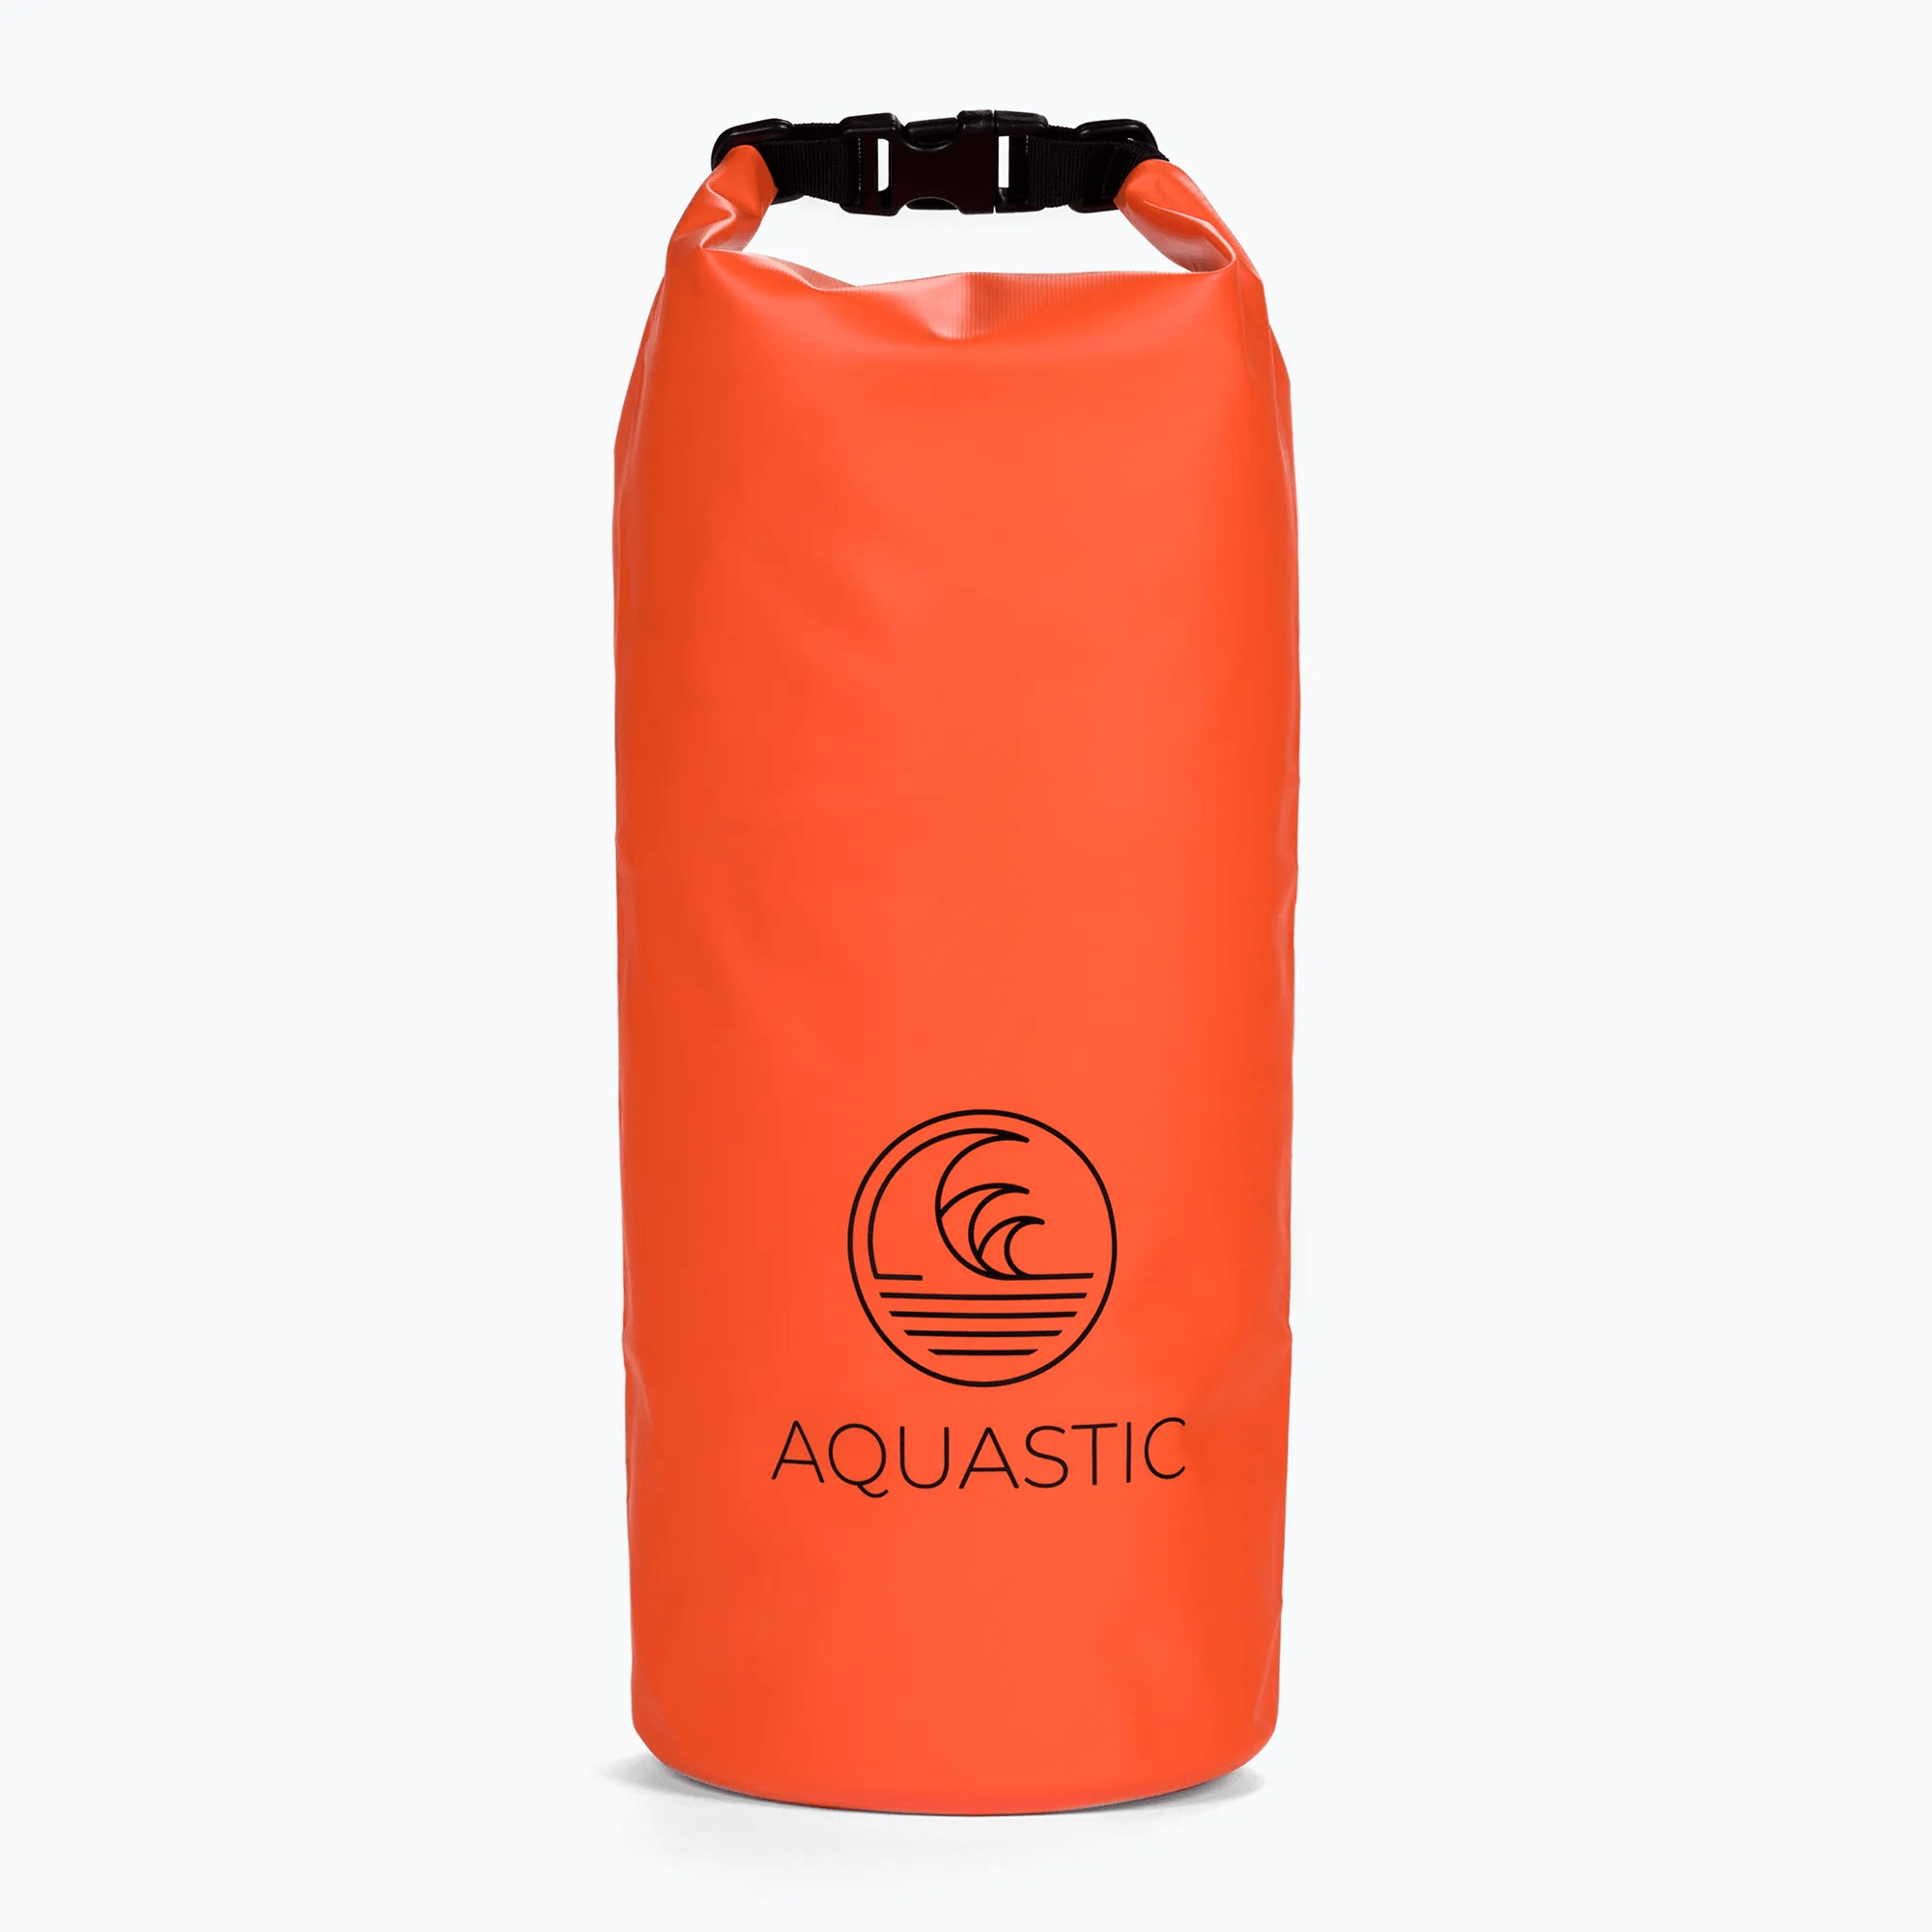 Aquastic: SUP 10 L Waterproof På